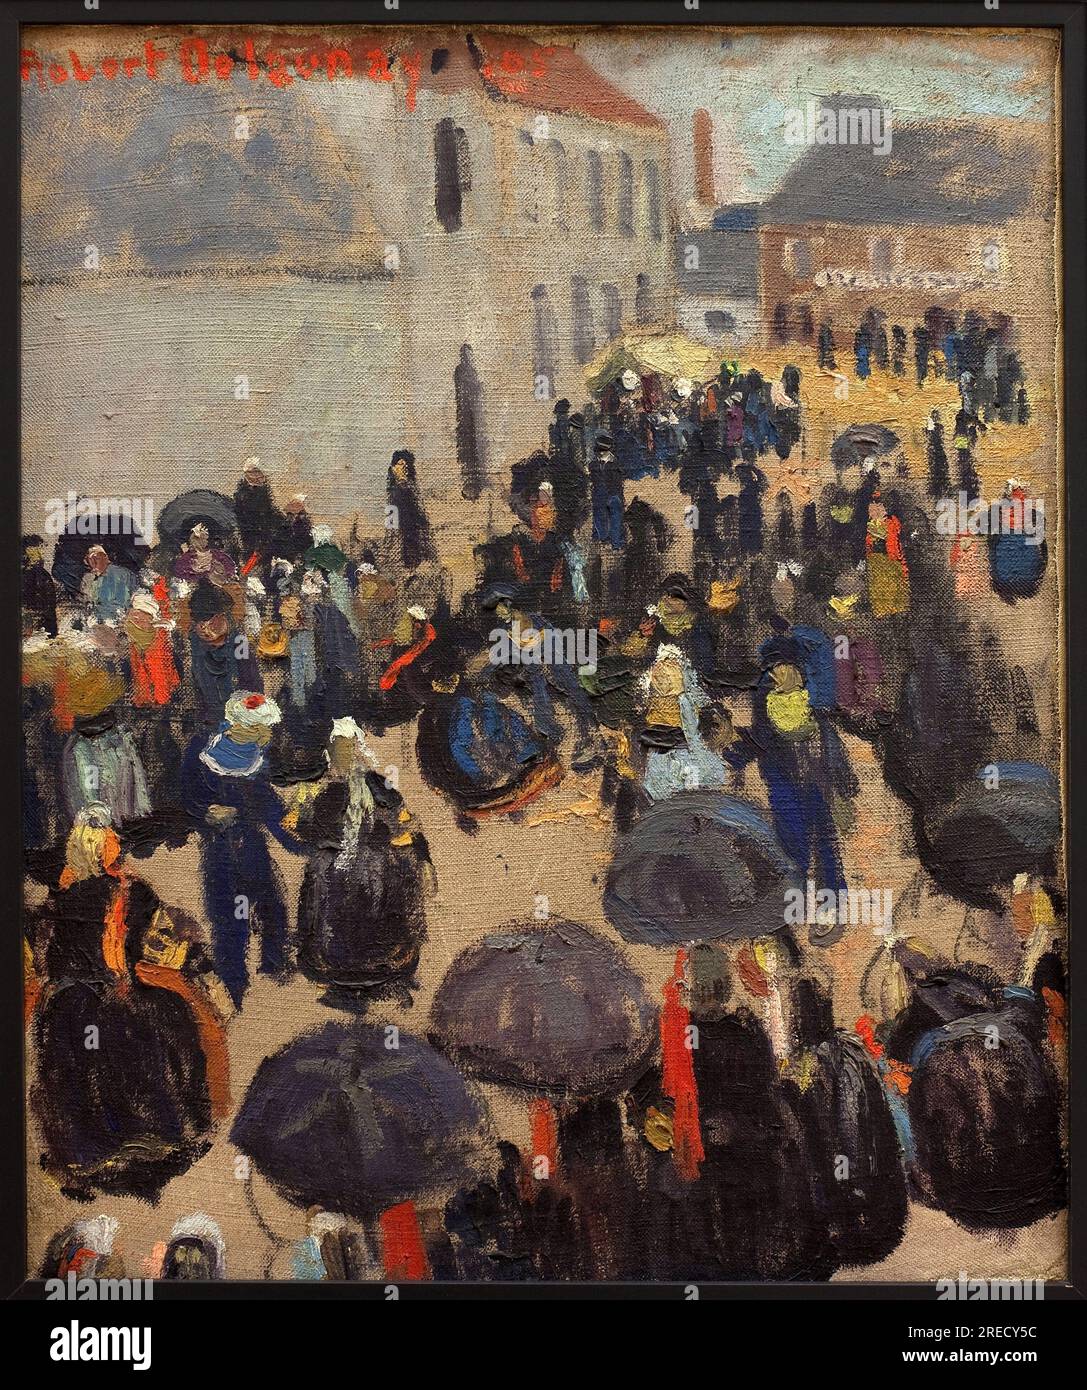 La fete au pays. Peinture de Robert Delaunay (1885-1941), huile sur toile, 1905. Musee des Beaux Arts de Rennes. Stock Photo